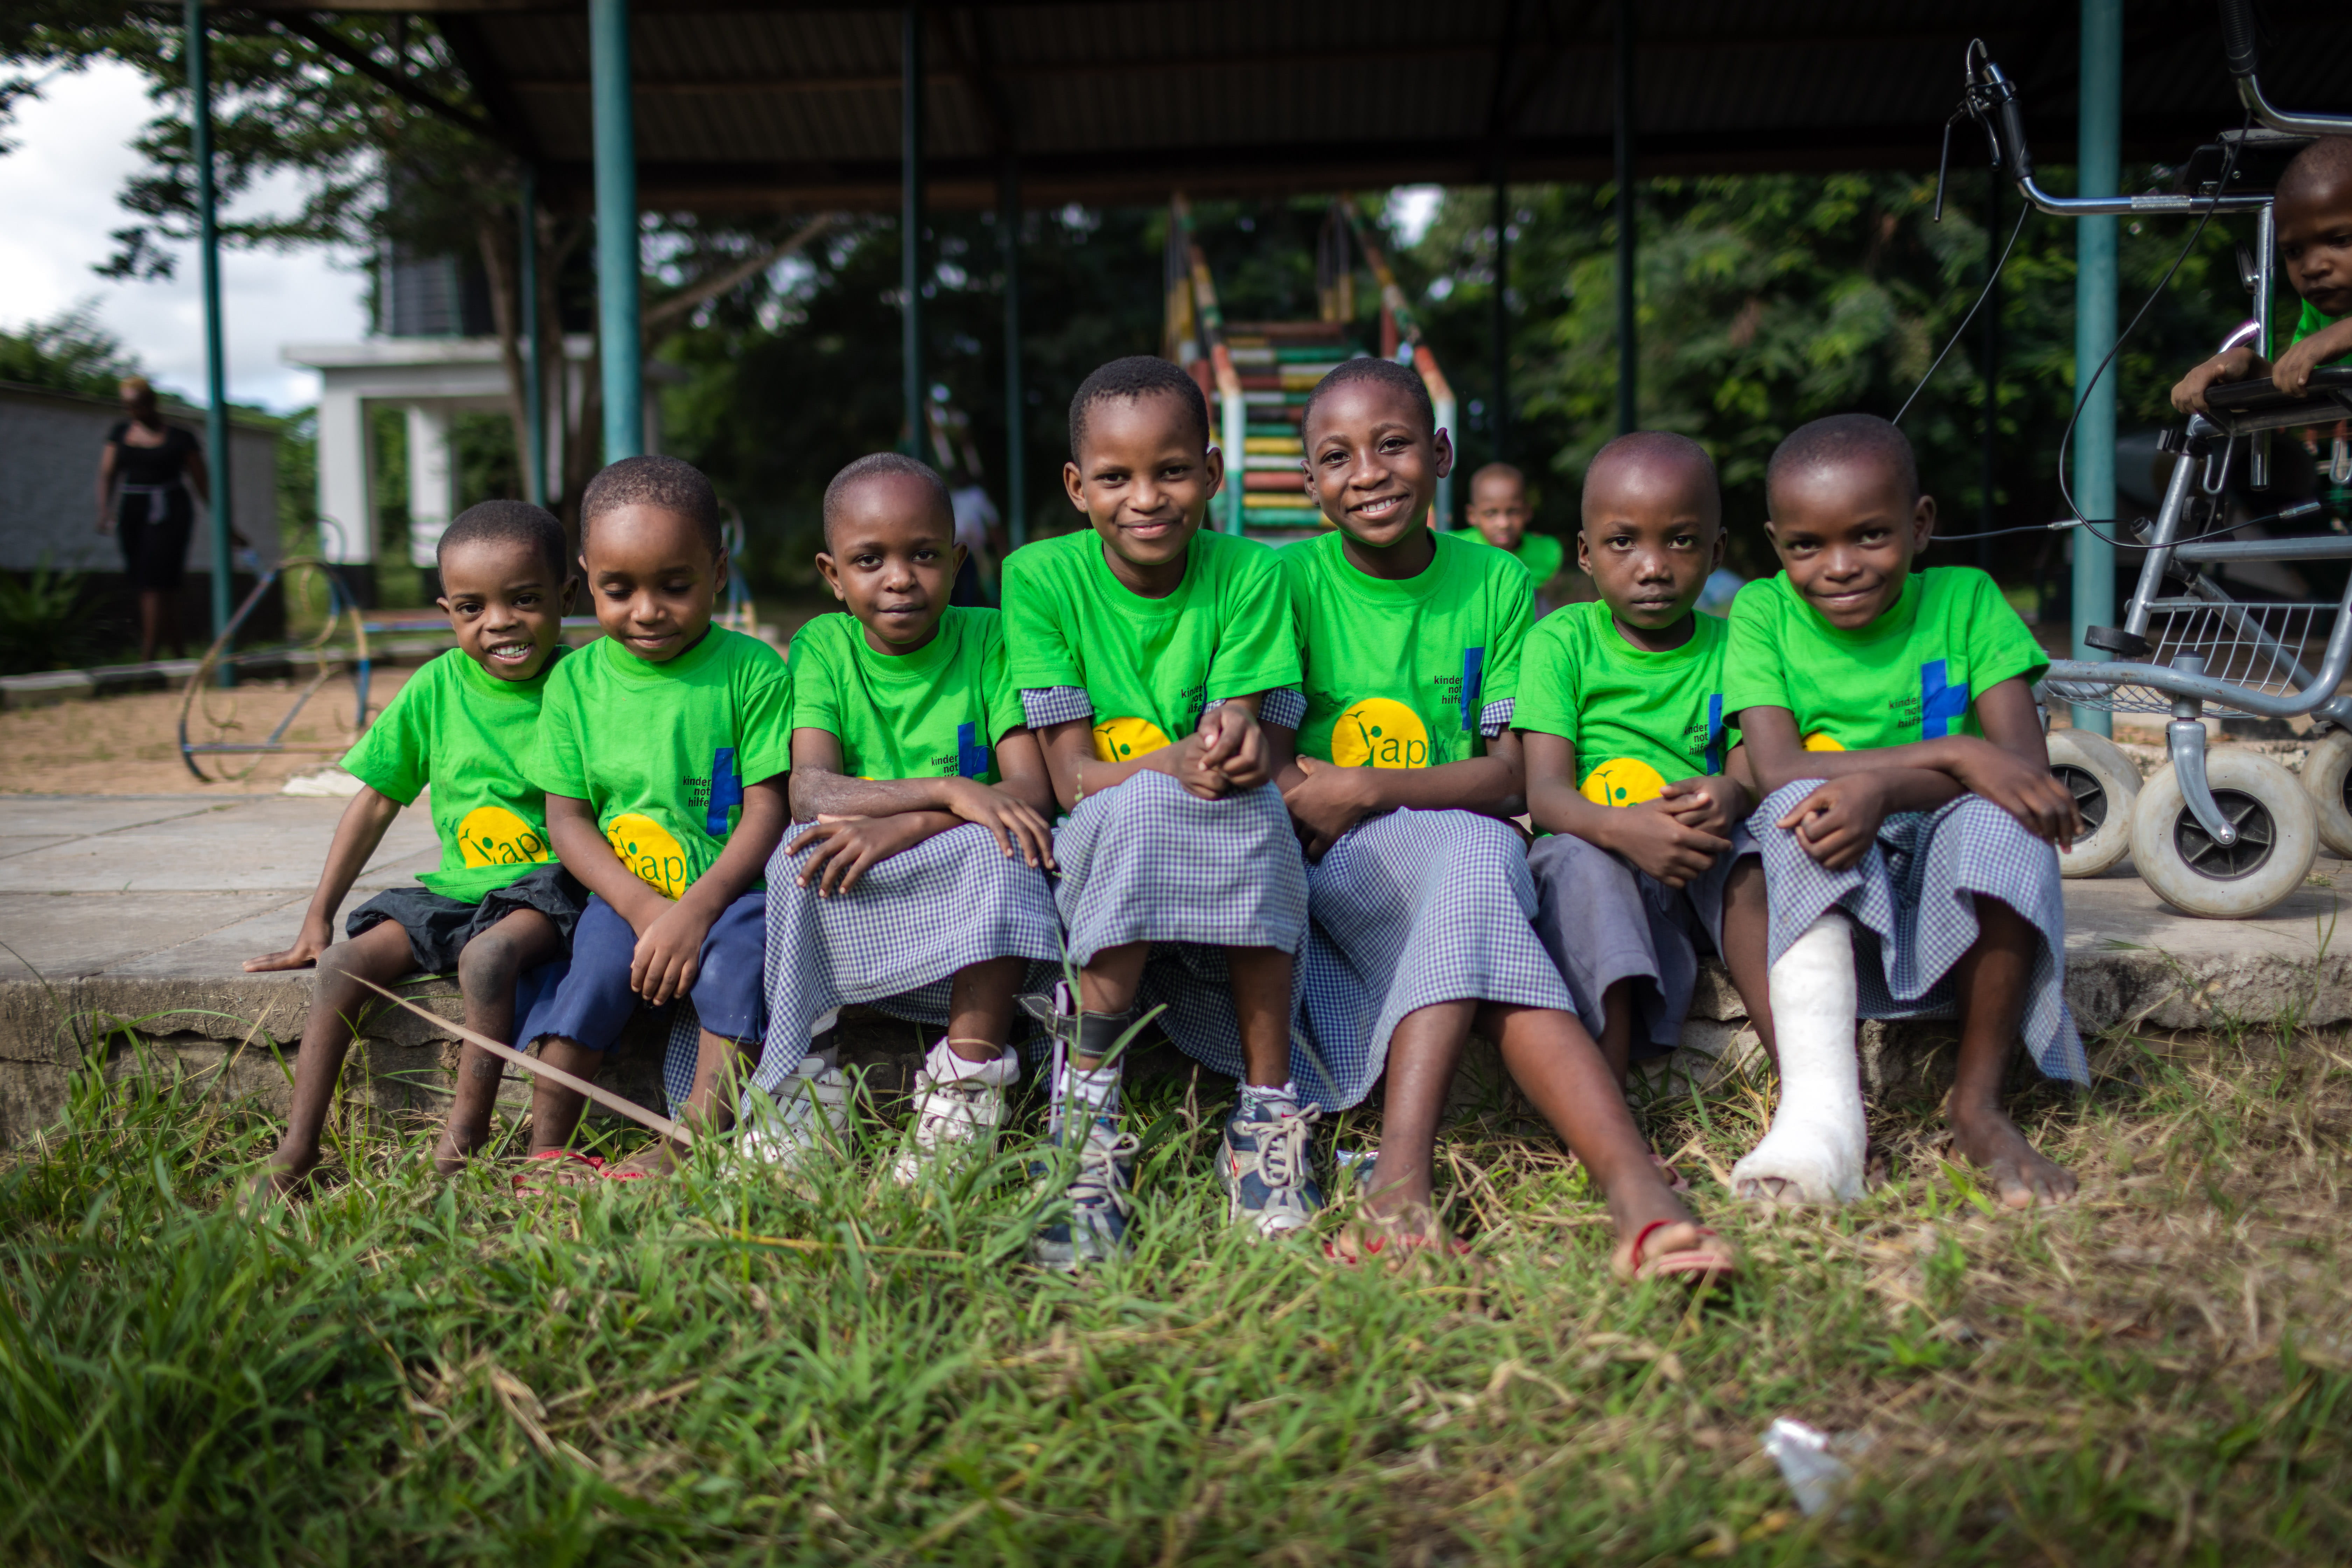 Mehrere Kinder sitzen mit grünen T-Shirts bekleidet in einer Reihe und lächeln. (Quelle: Lars Heidrich)